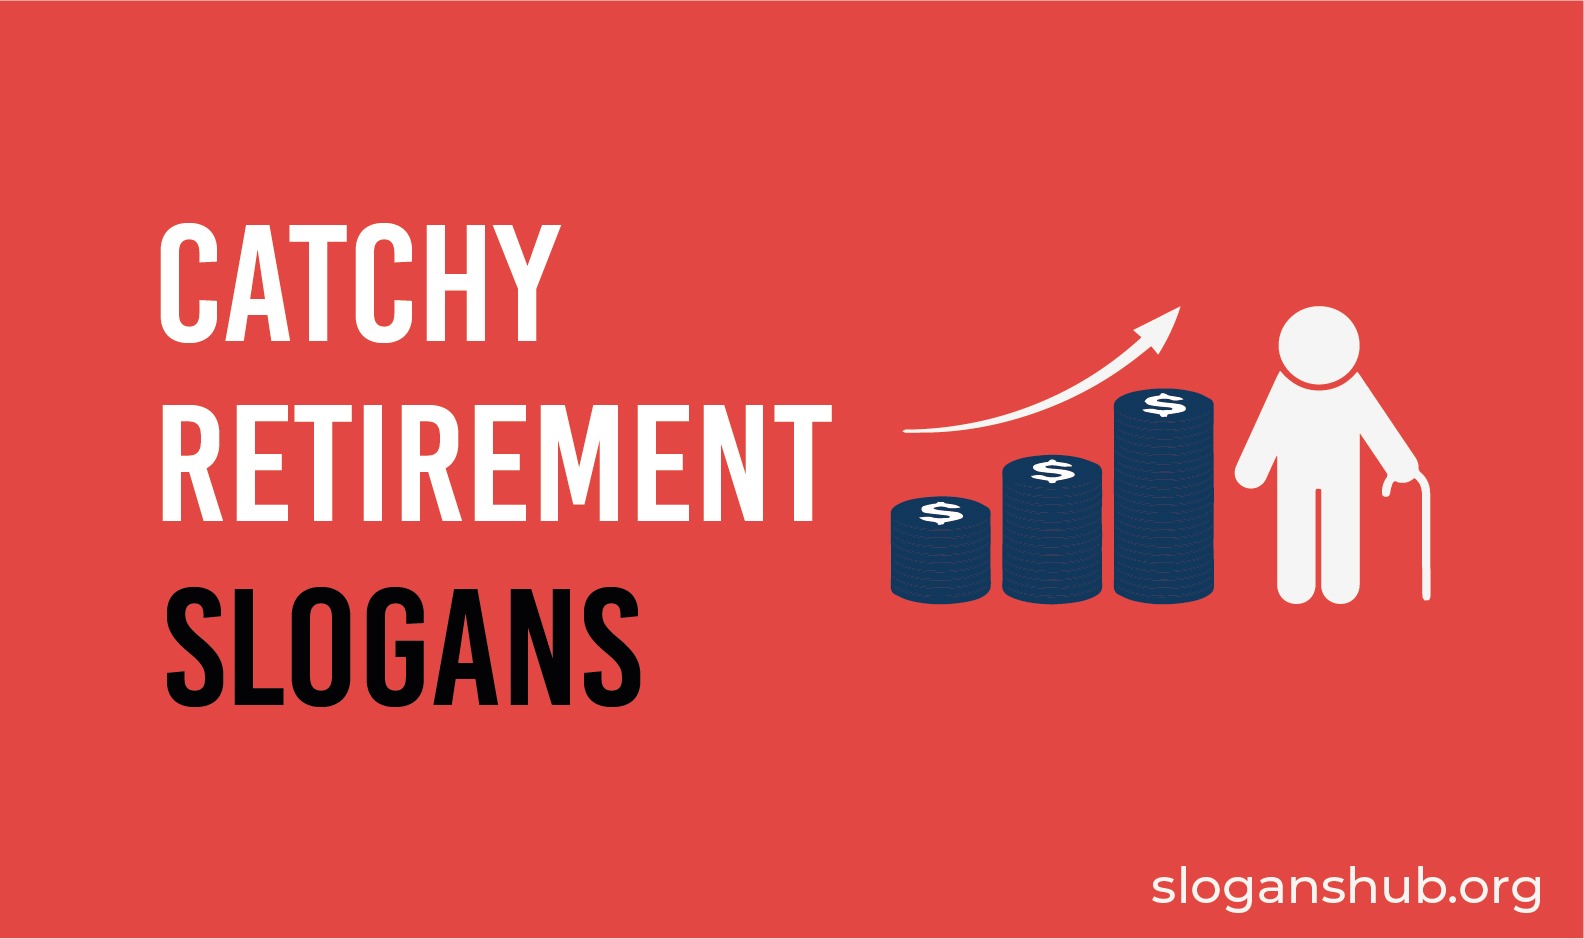 50 Catchy Retirement Slogans